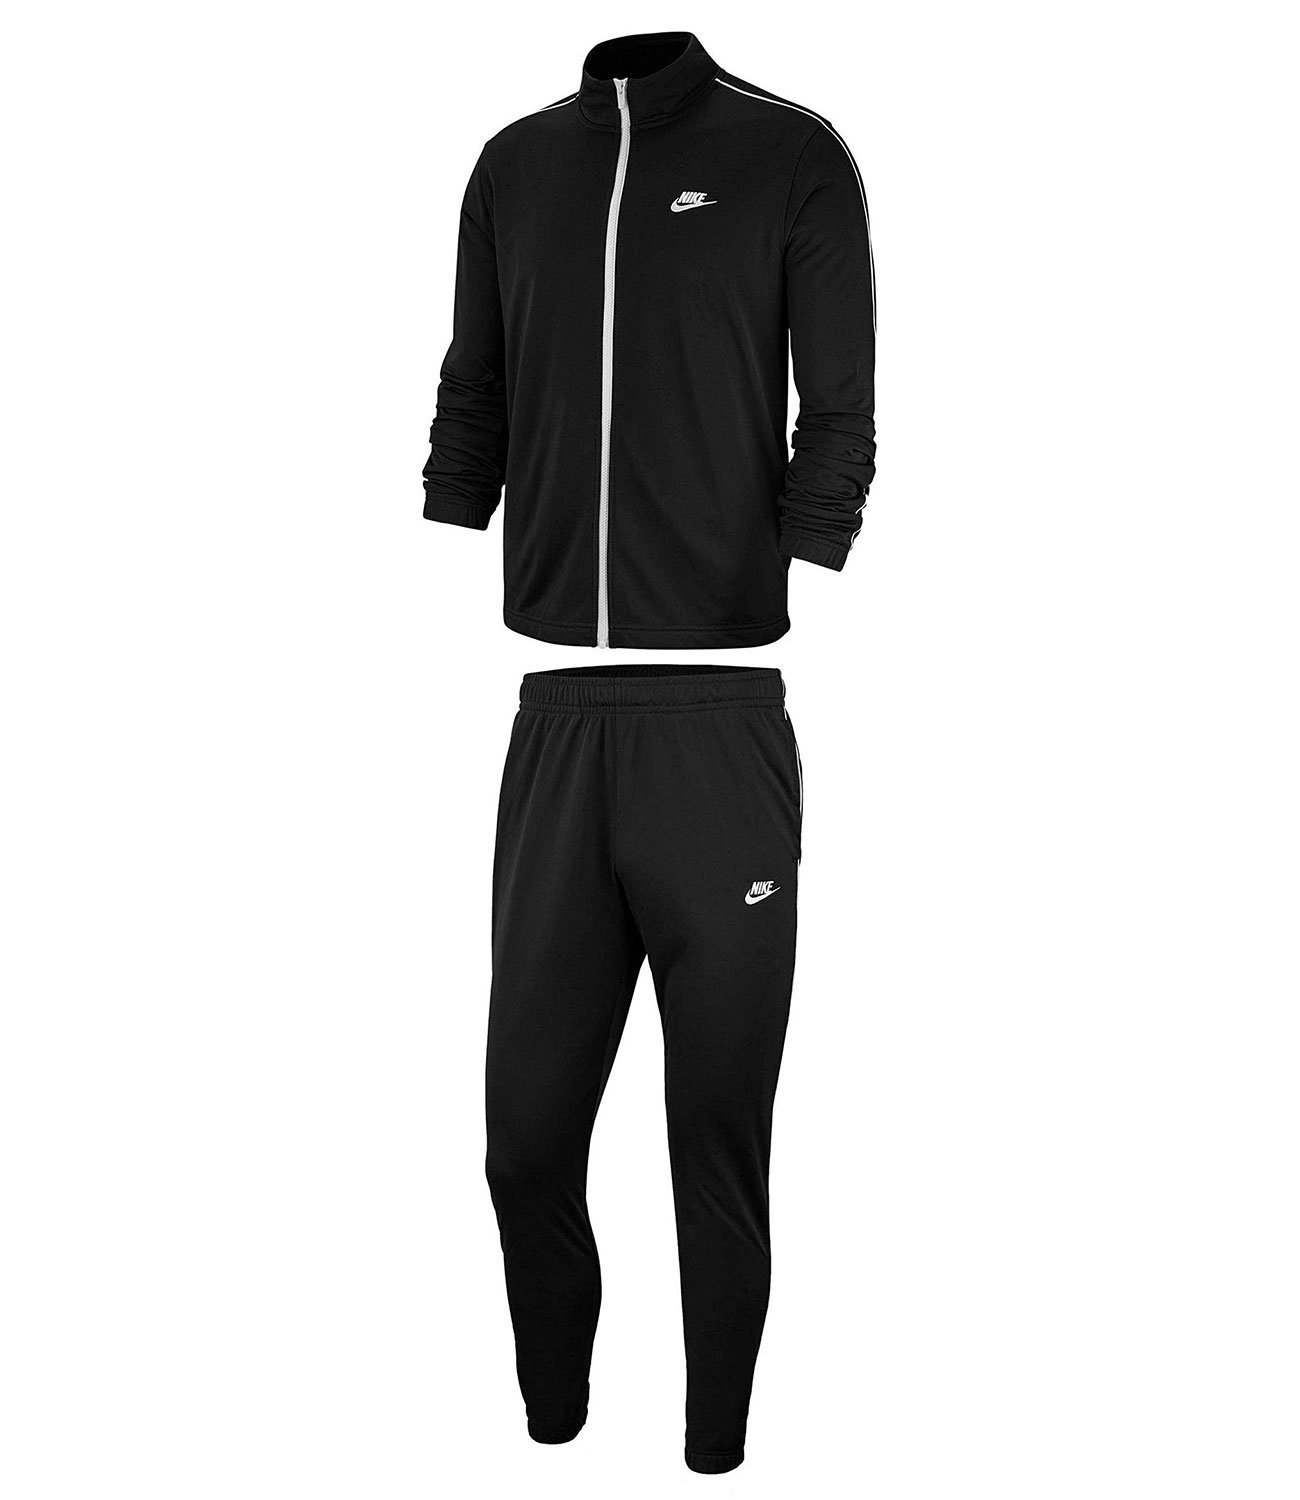 Спортивный костюм класс. Черный спортивный костюм Nike bv3034-010. Nike bv3034-010. Черный спортивный костюм Nike Woven 886511-010. Nike Tracksuit костюм мужской.